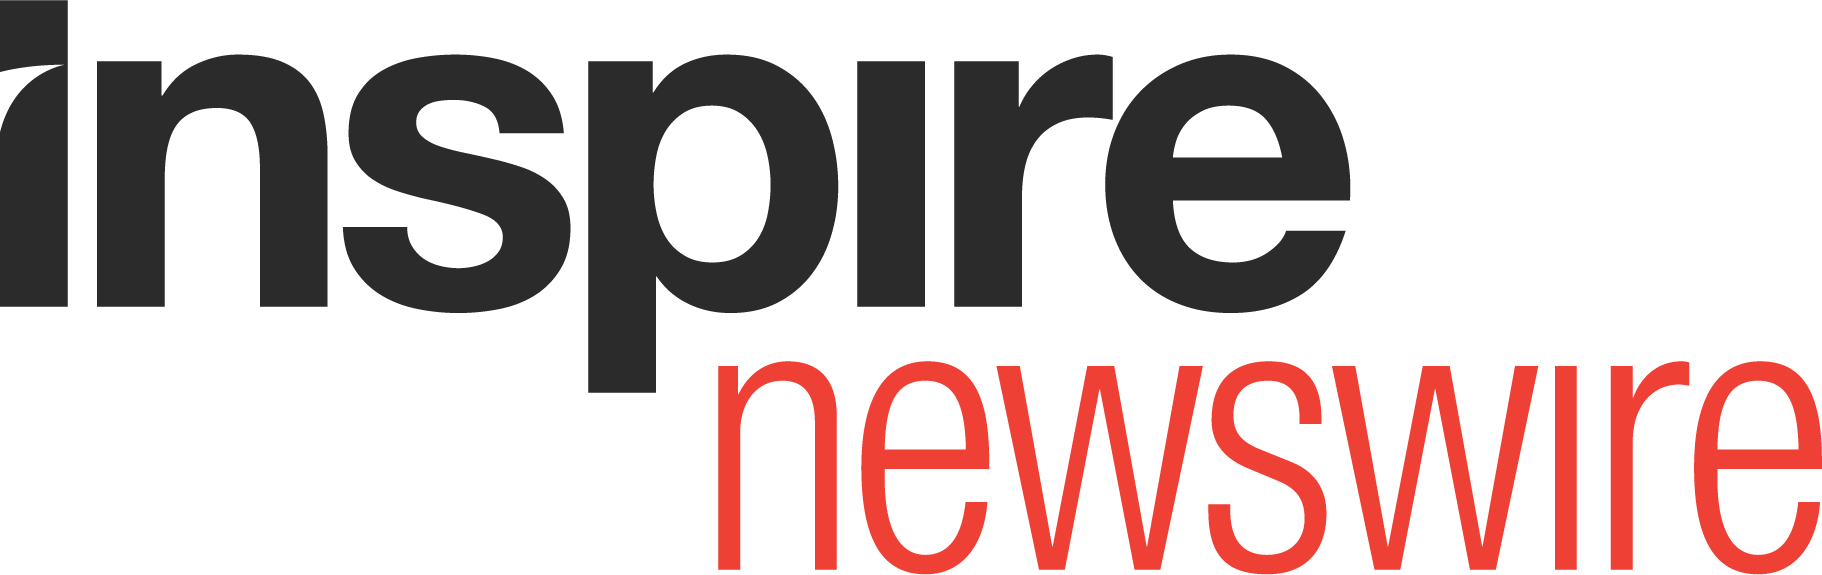 Inspire Newswire Logo